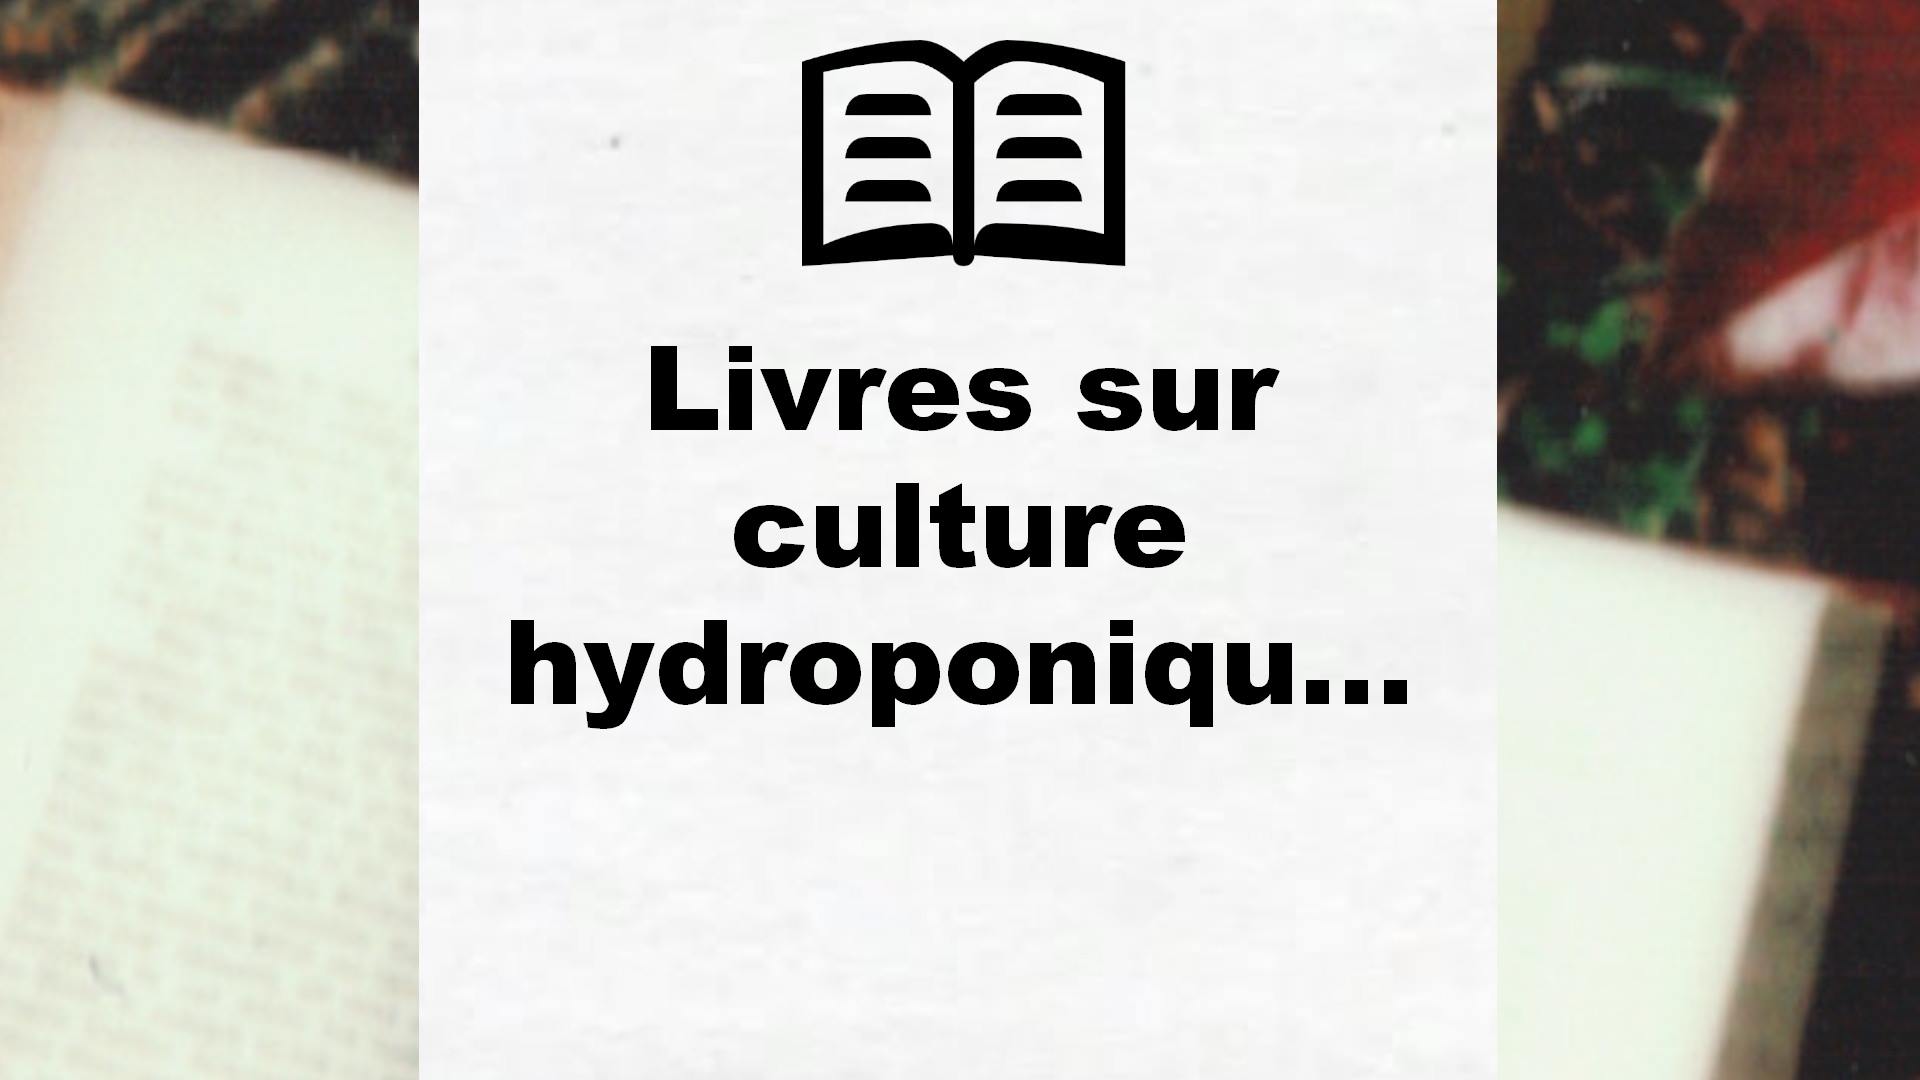 Livres sur culture hydroponique